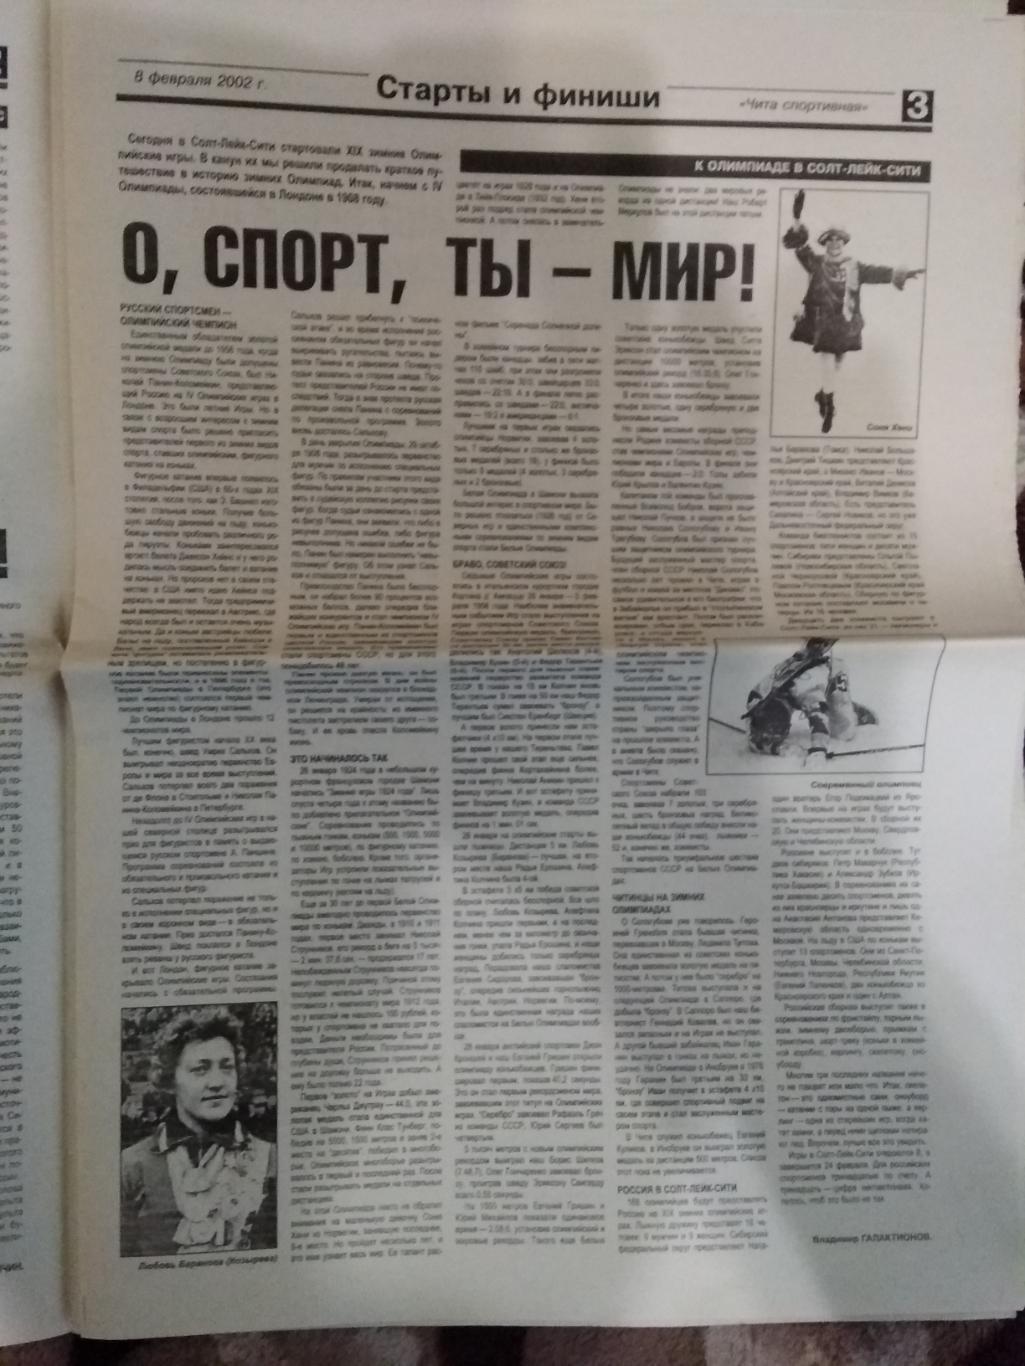 Газета.Чита спортивная № 2 2002 г. 1